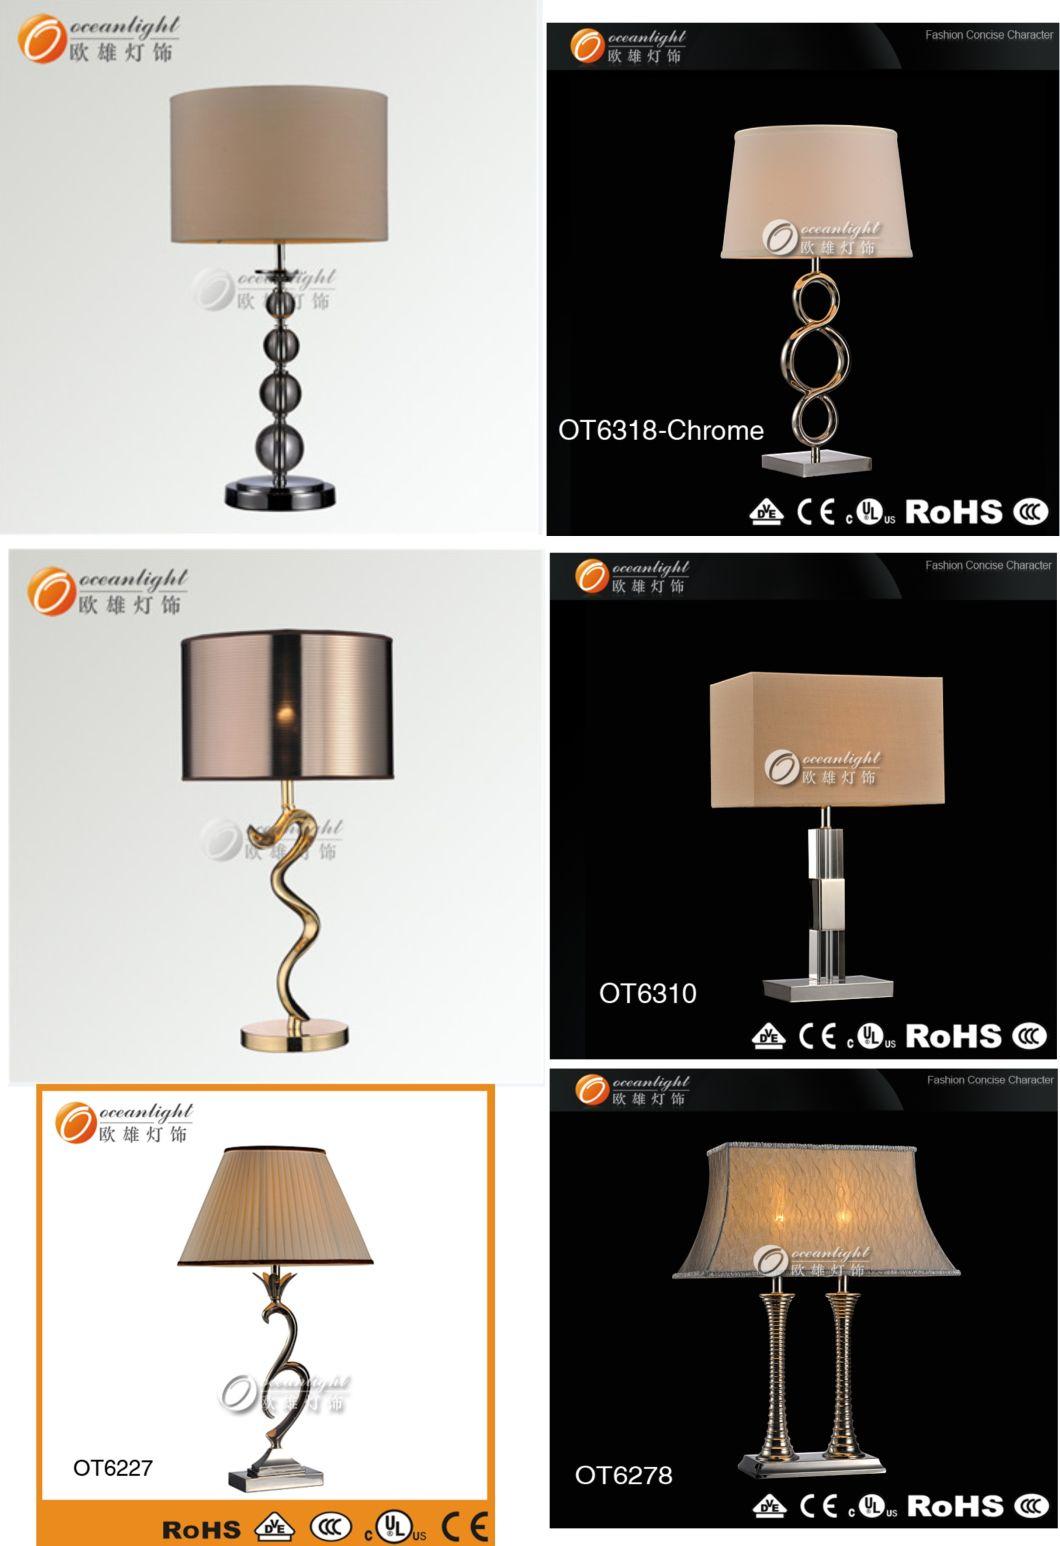 Europe Type Indoor Desk Lamp Has Design Distinctive Popularity